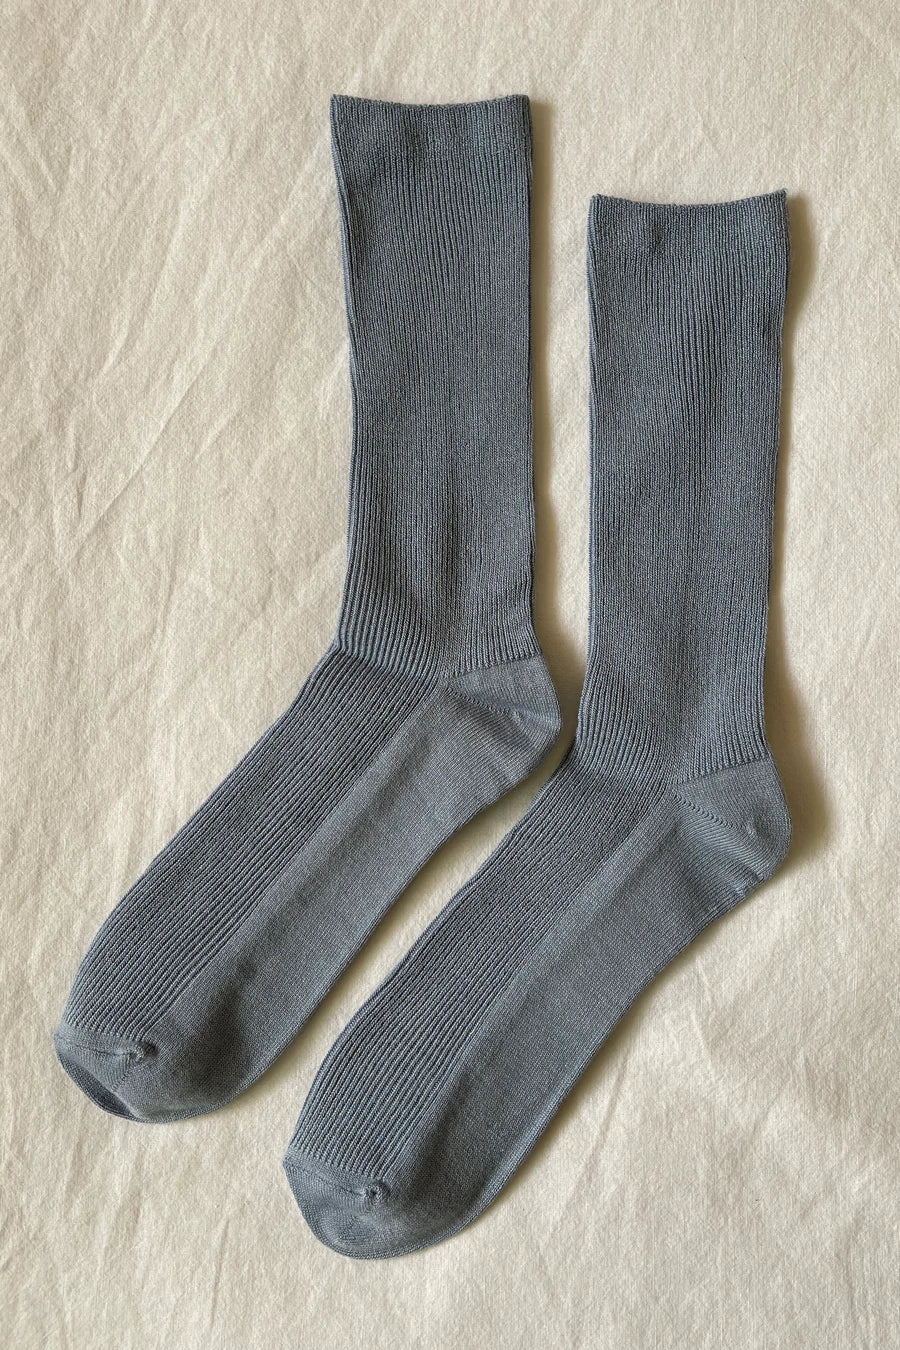 LE BON SHOPPE trouser socks bluebell